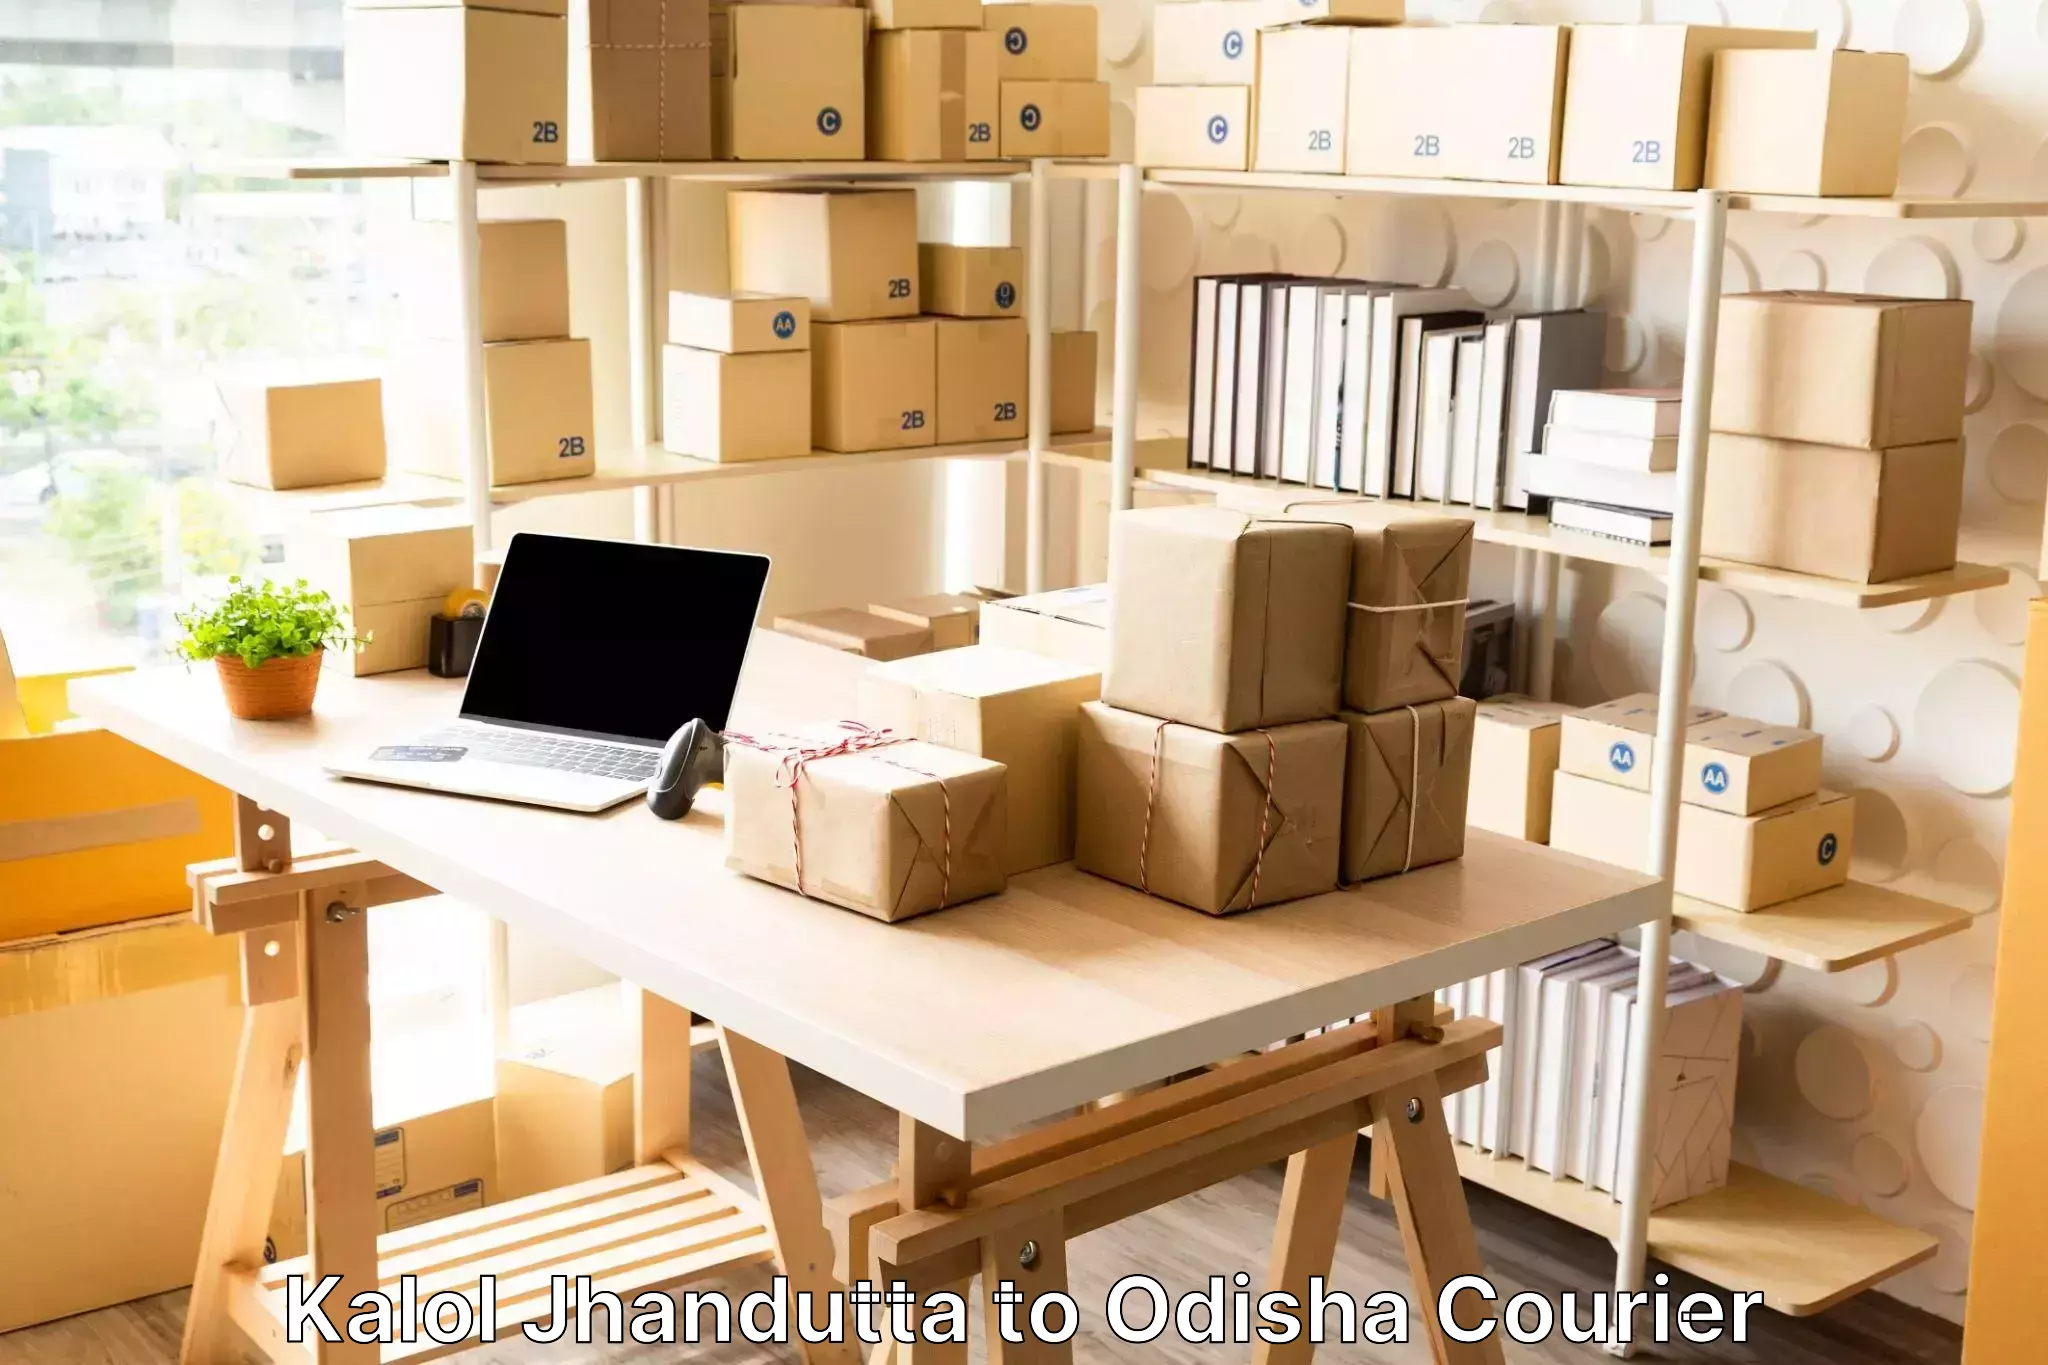 Luggage transport deals Kalol Jhandutta to Odisha